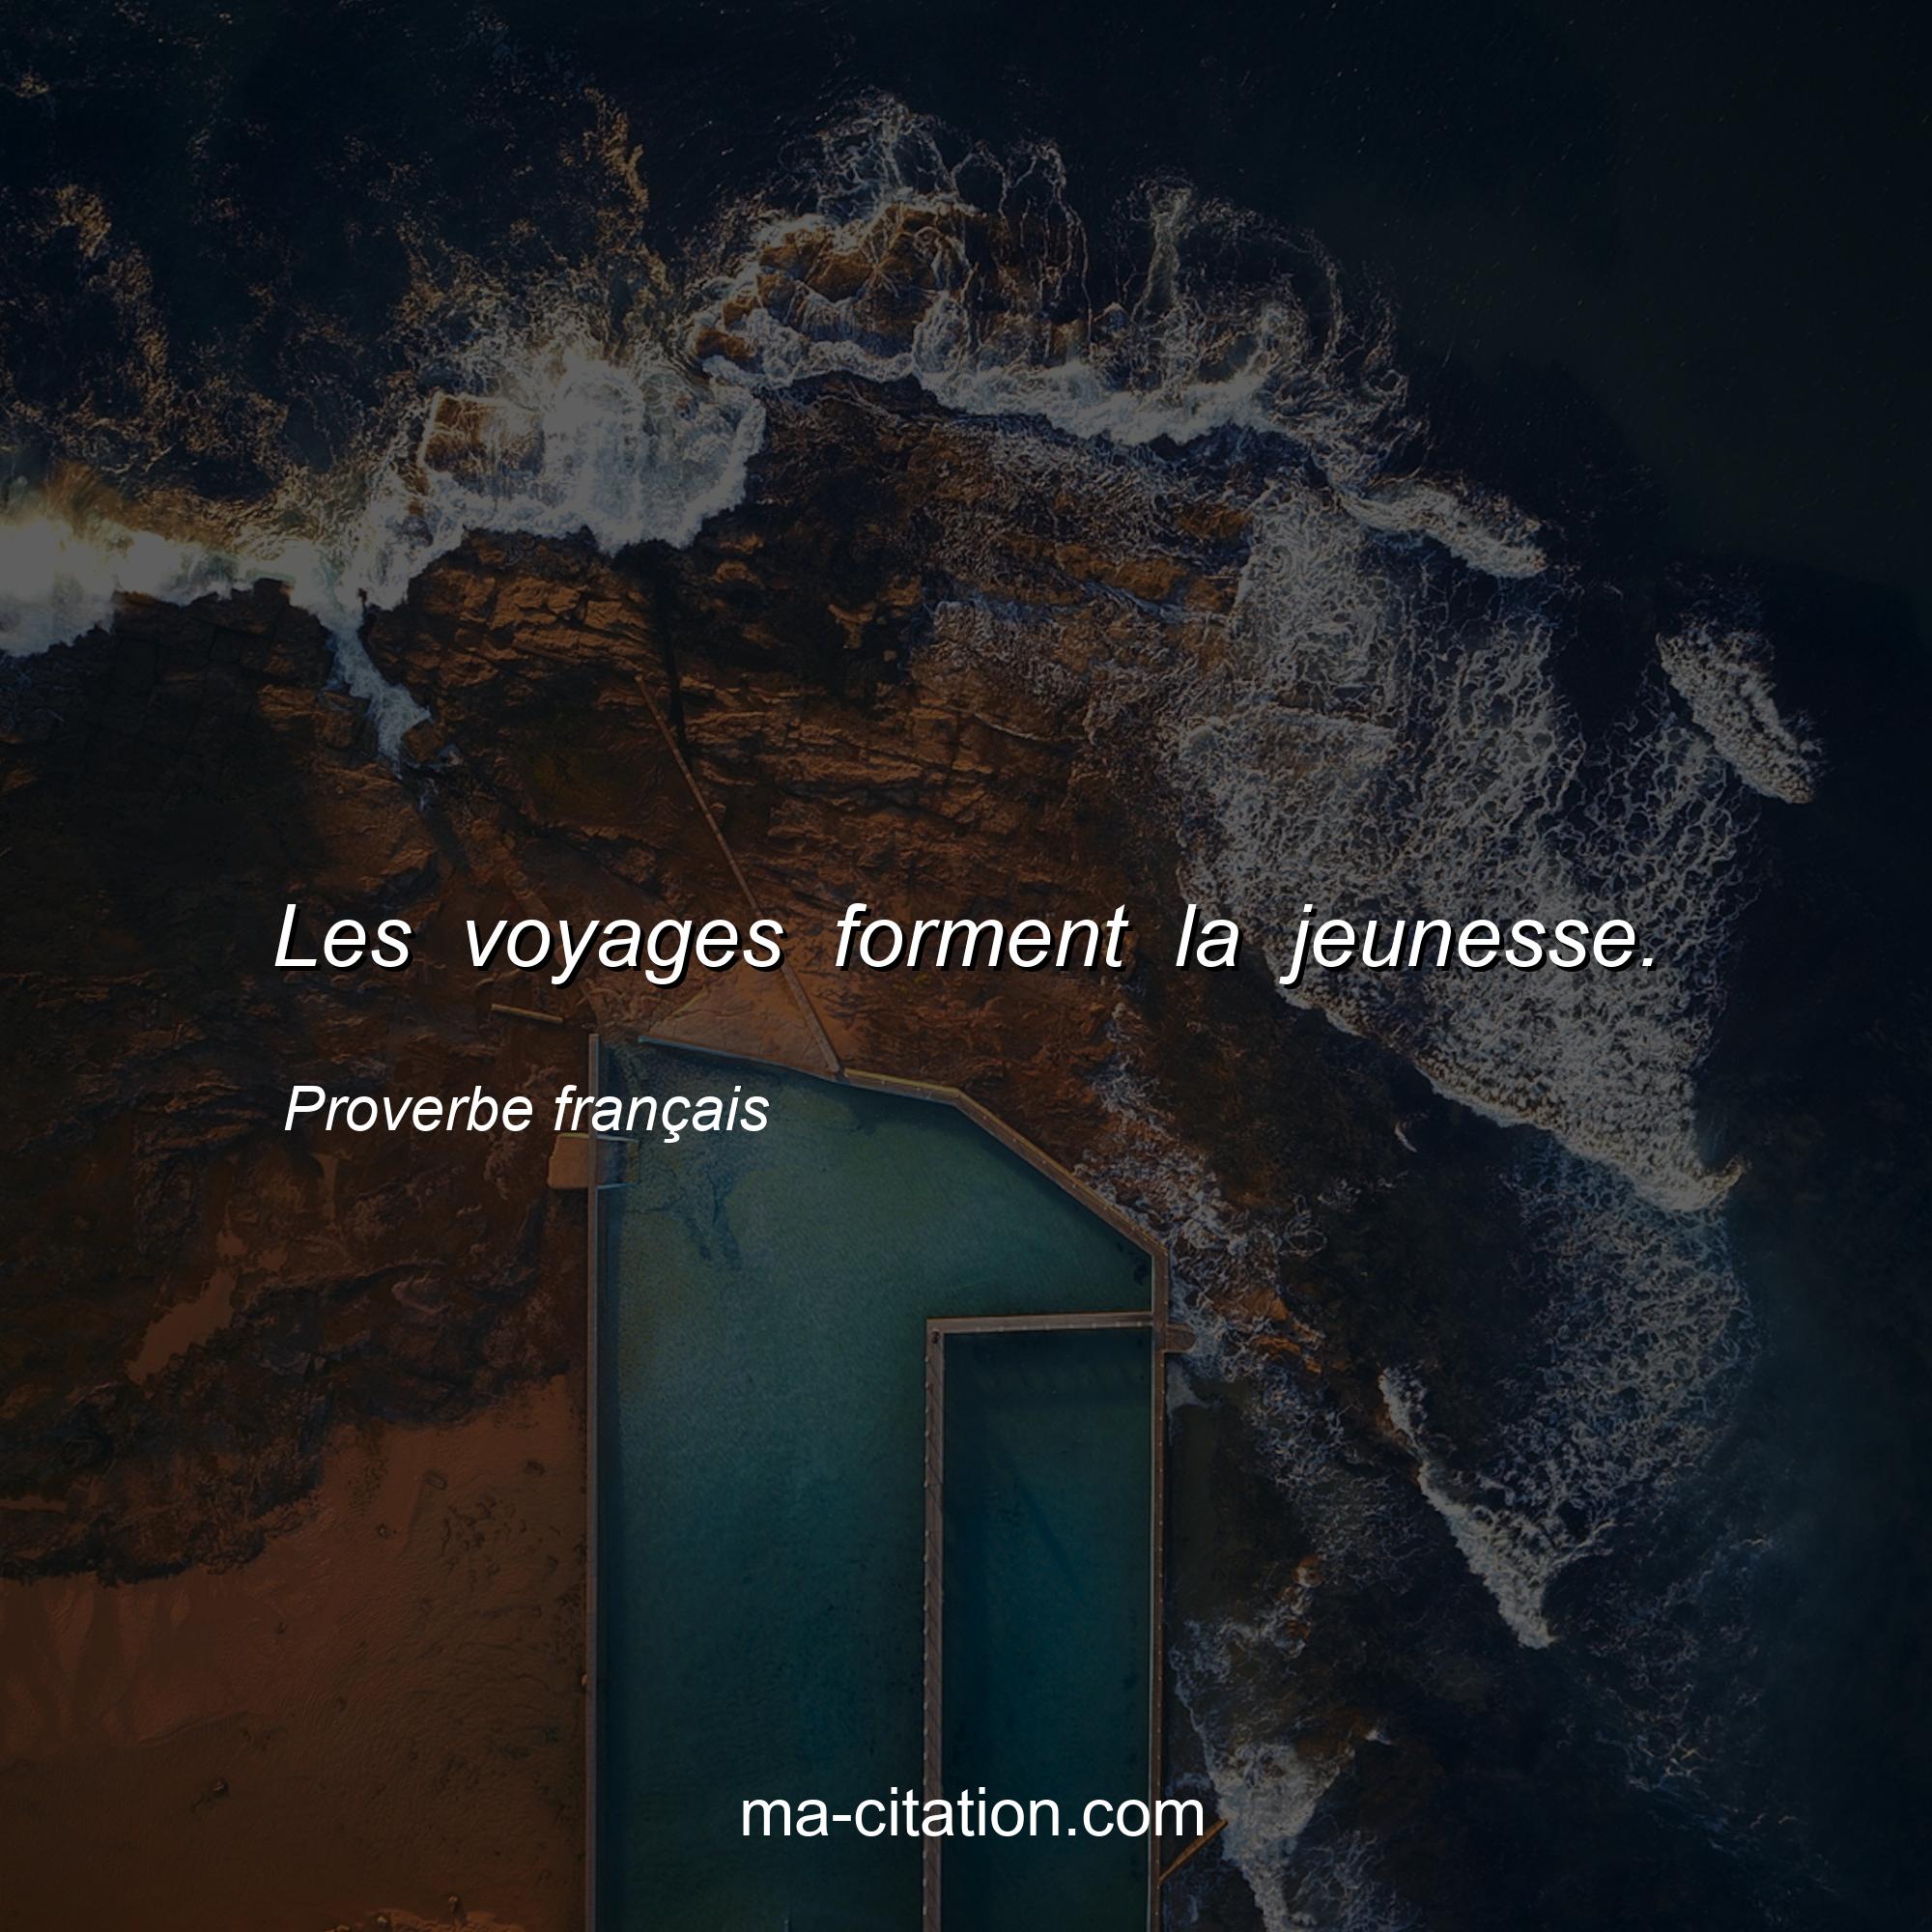 Proverbe français : Les voyages forment la jeunesse.